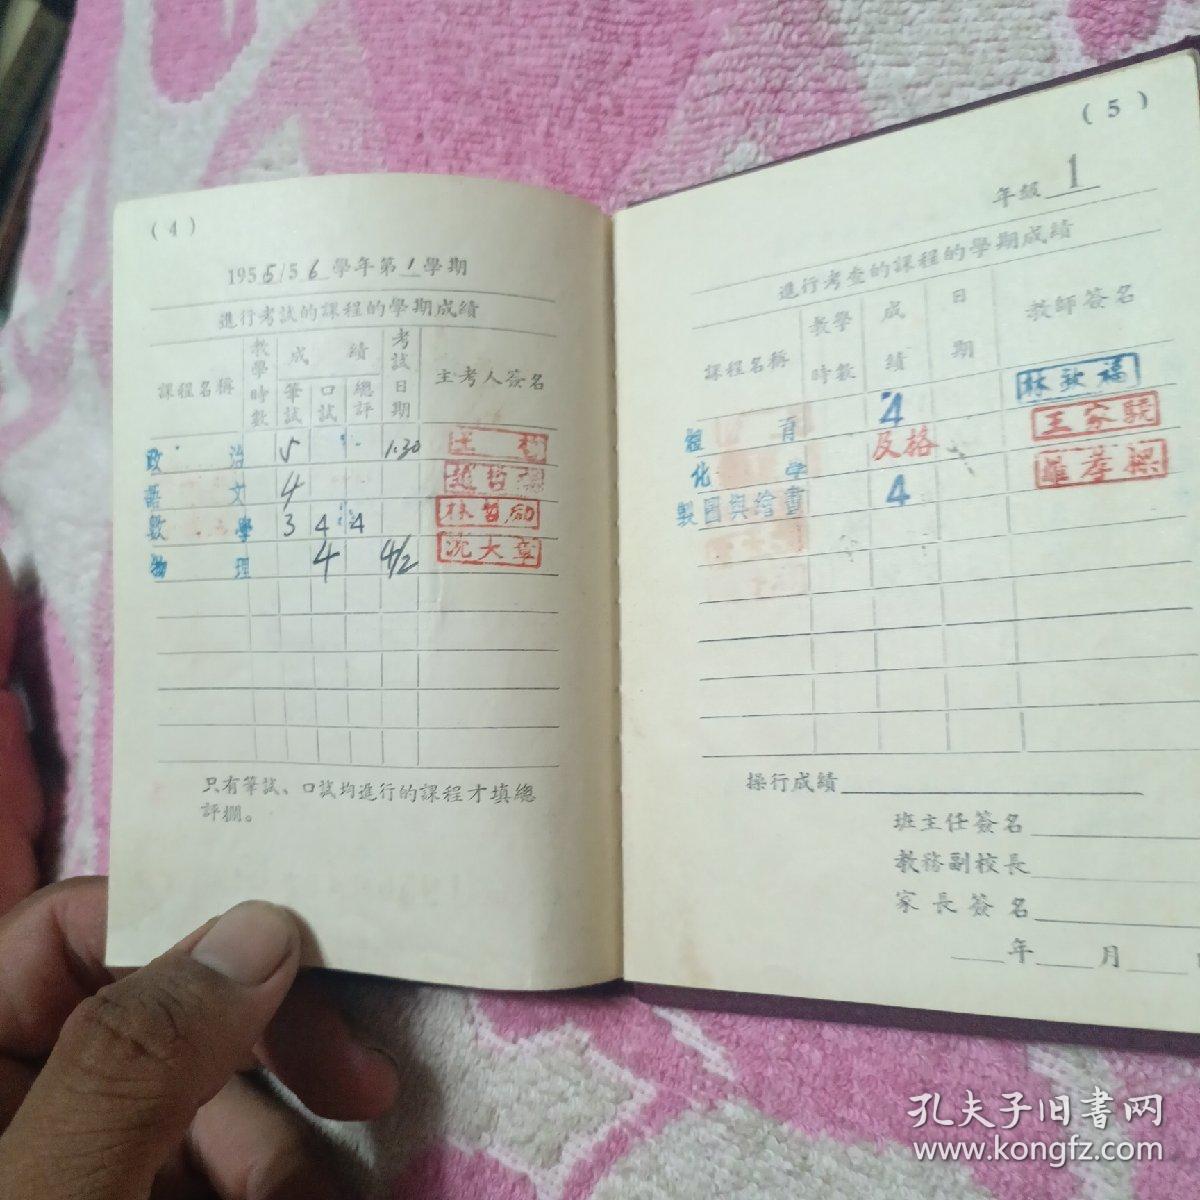 天津市土木工程学校学生成绩册 1956年